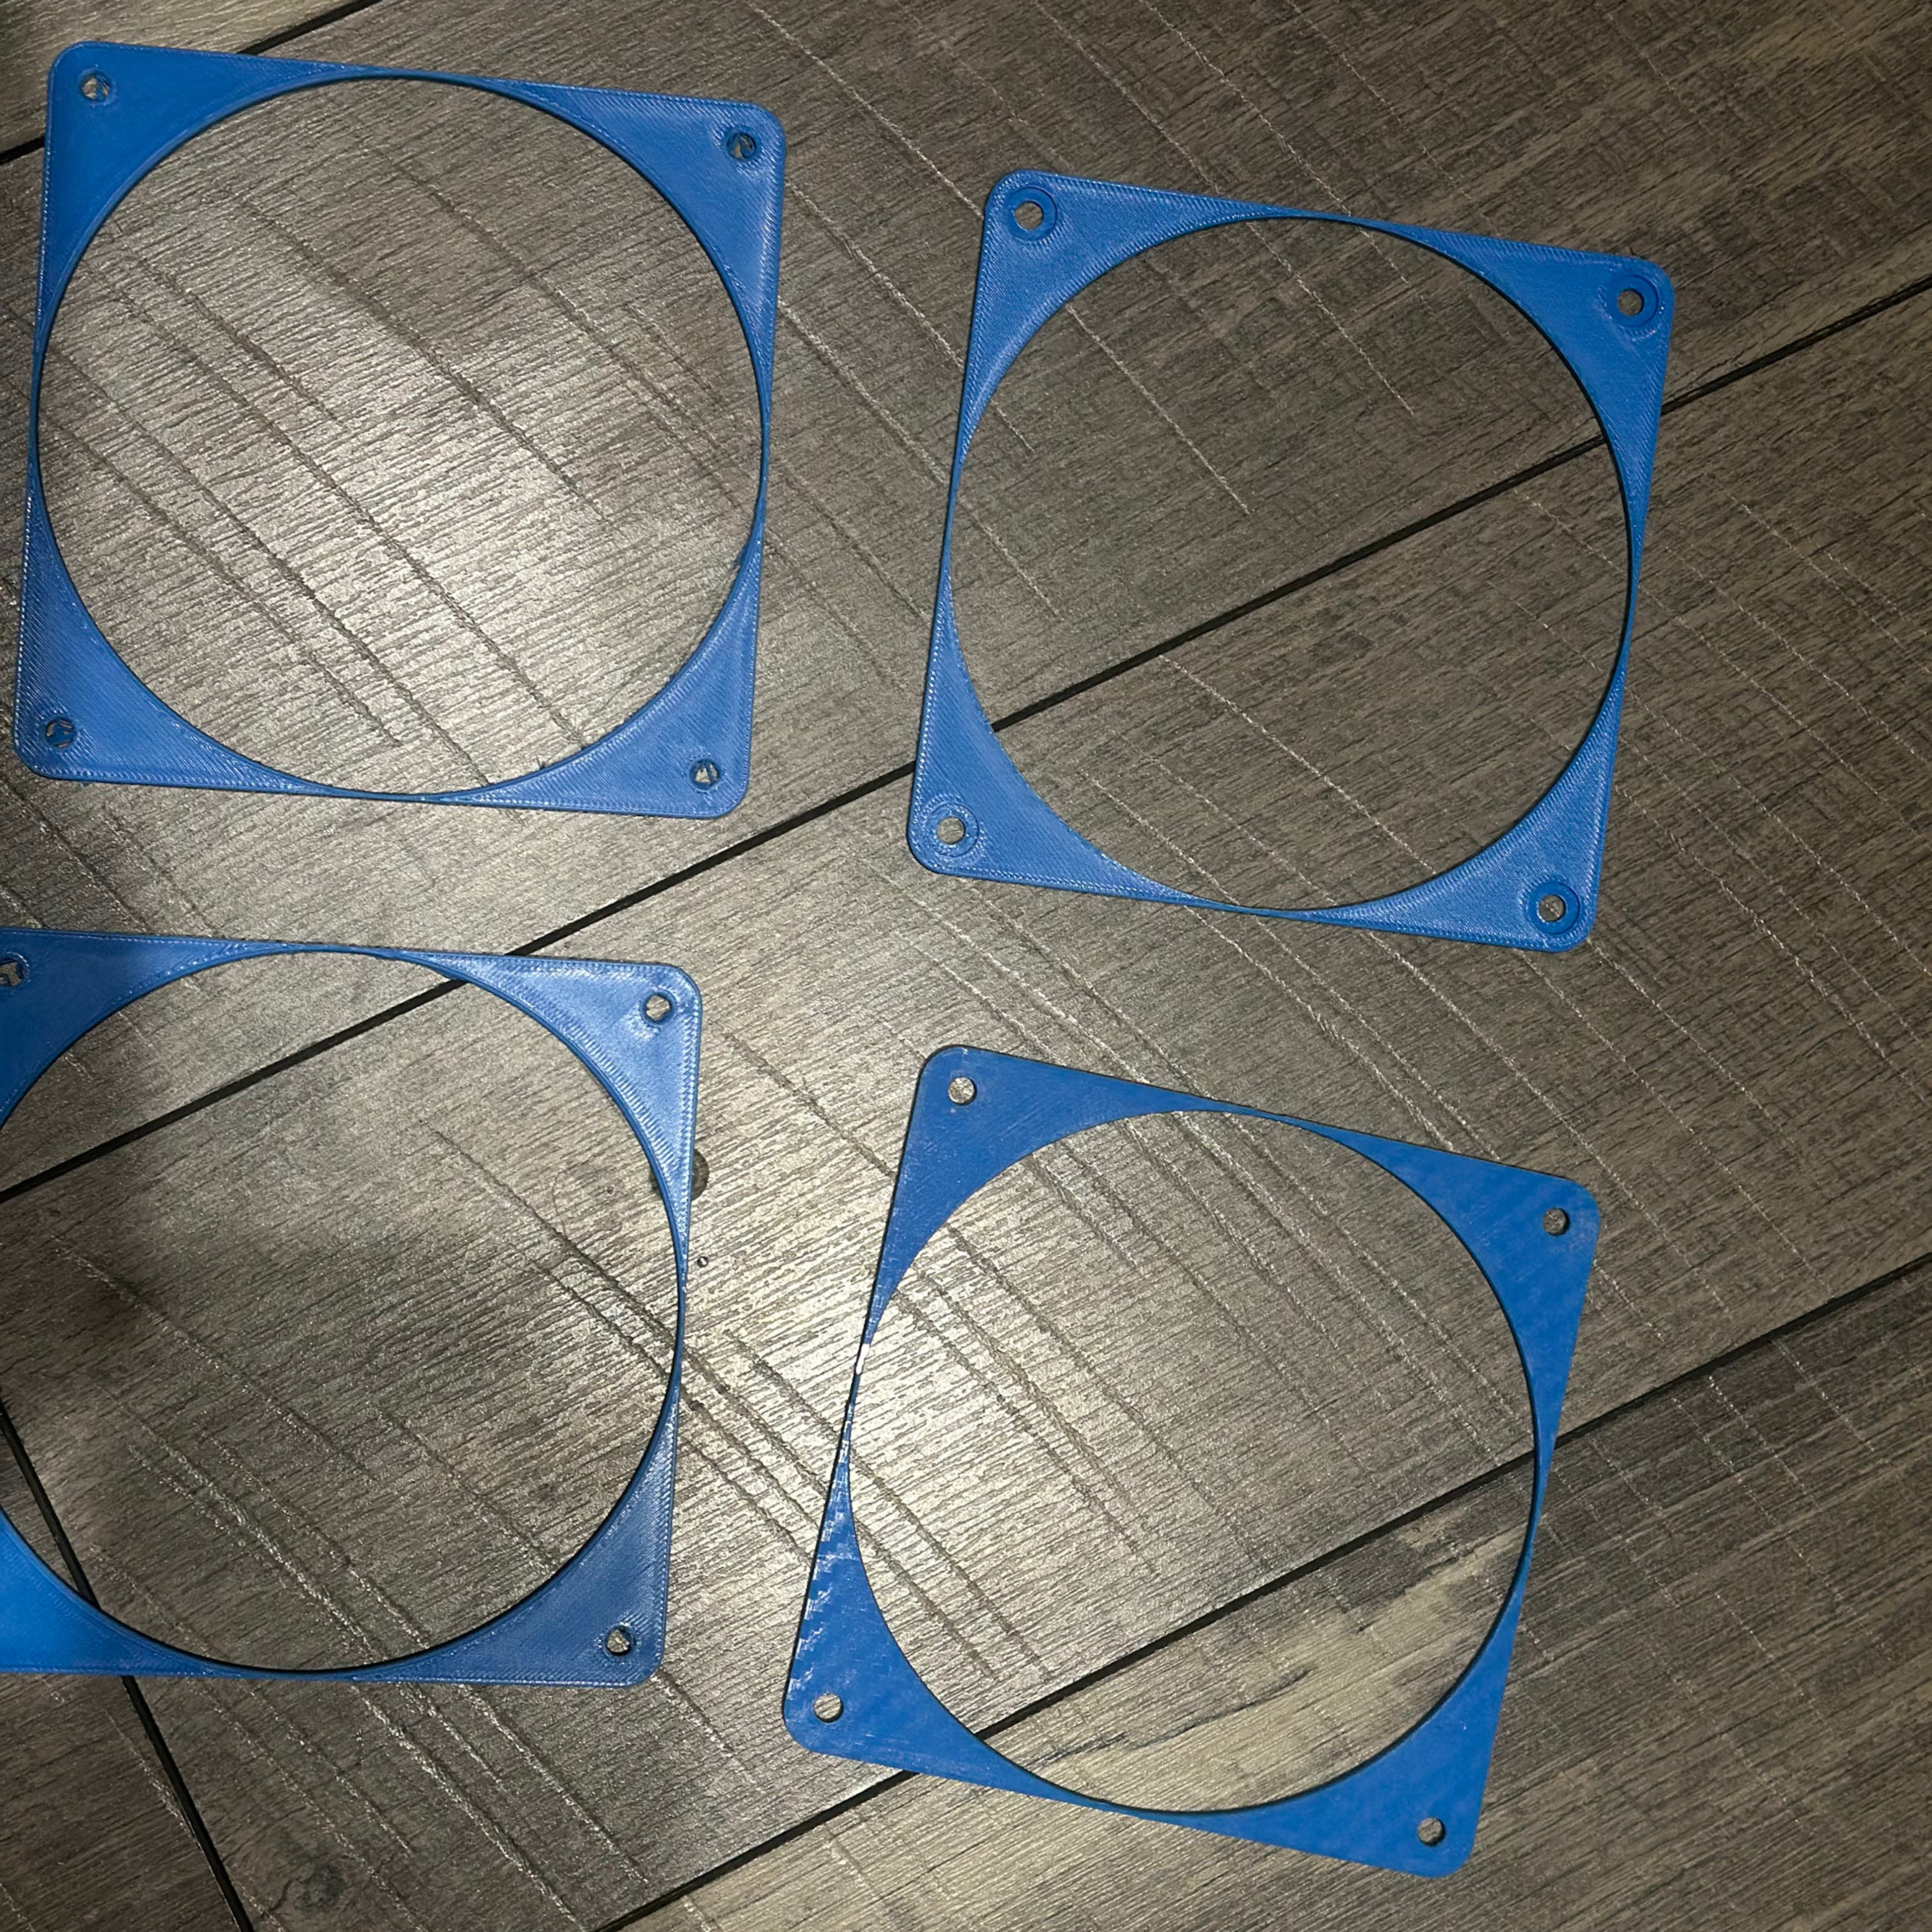 3D Printed 120mm Fan spacers